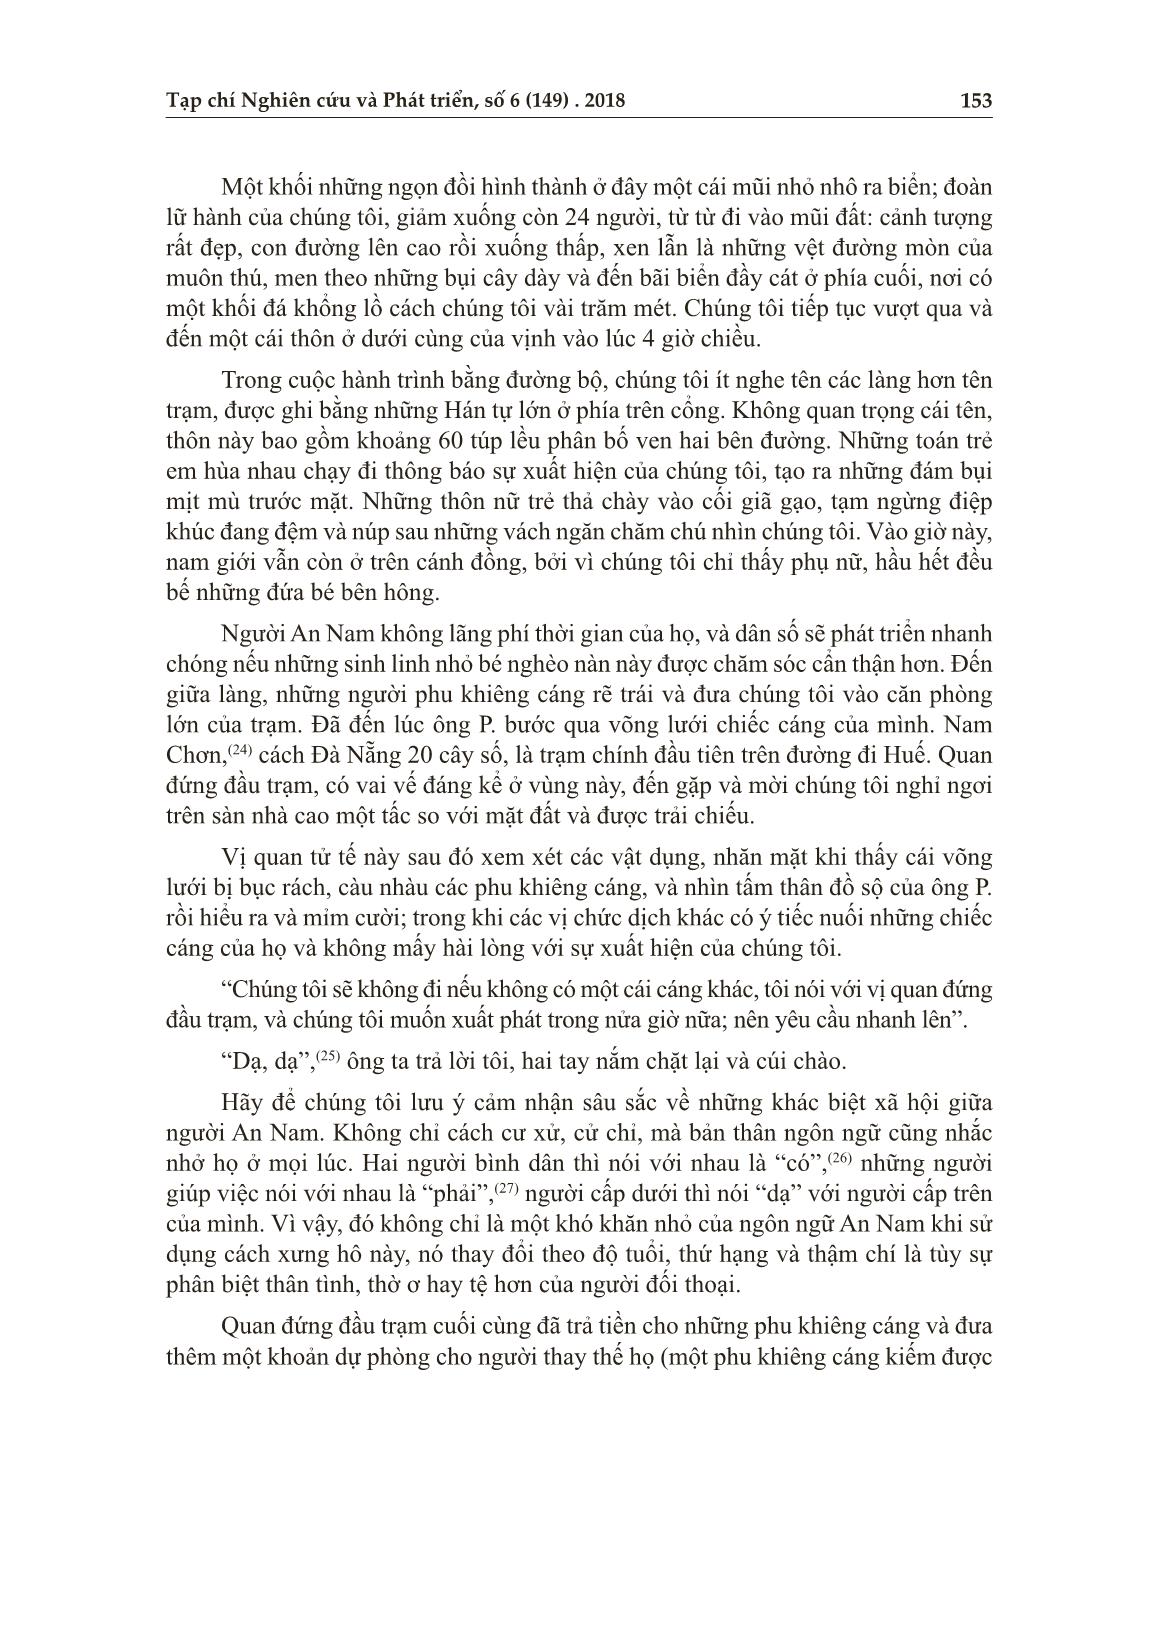 Từ đèo Hải Vân đến sông An Cựu - Huế năm 1876 trang 6